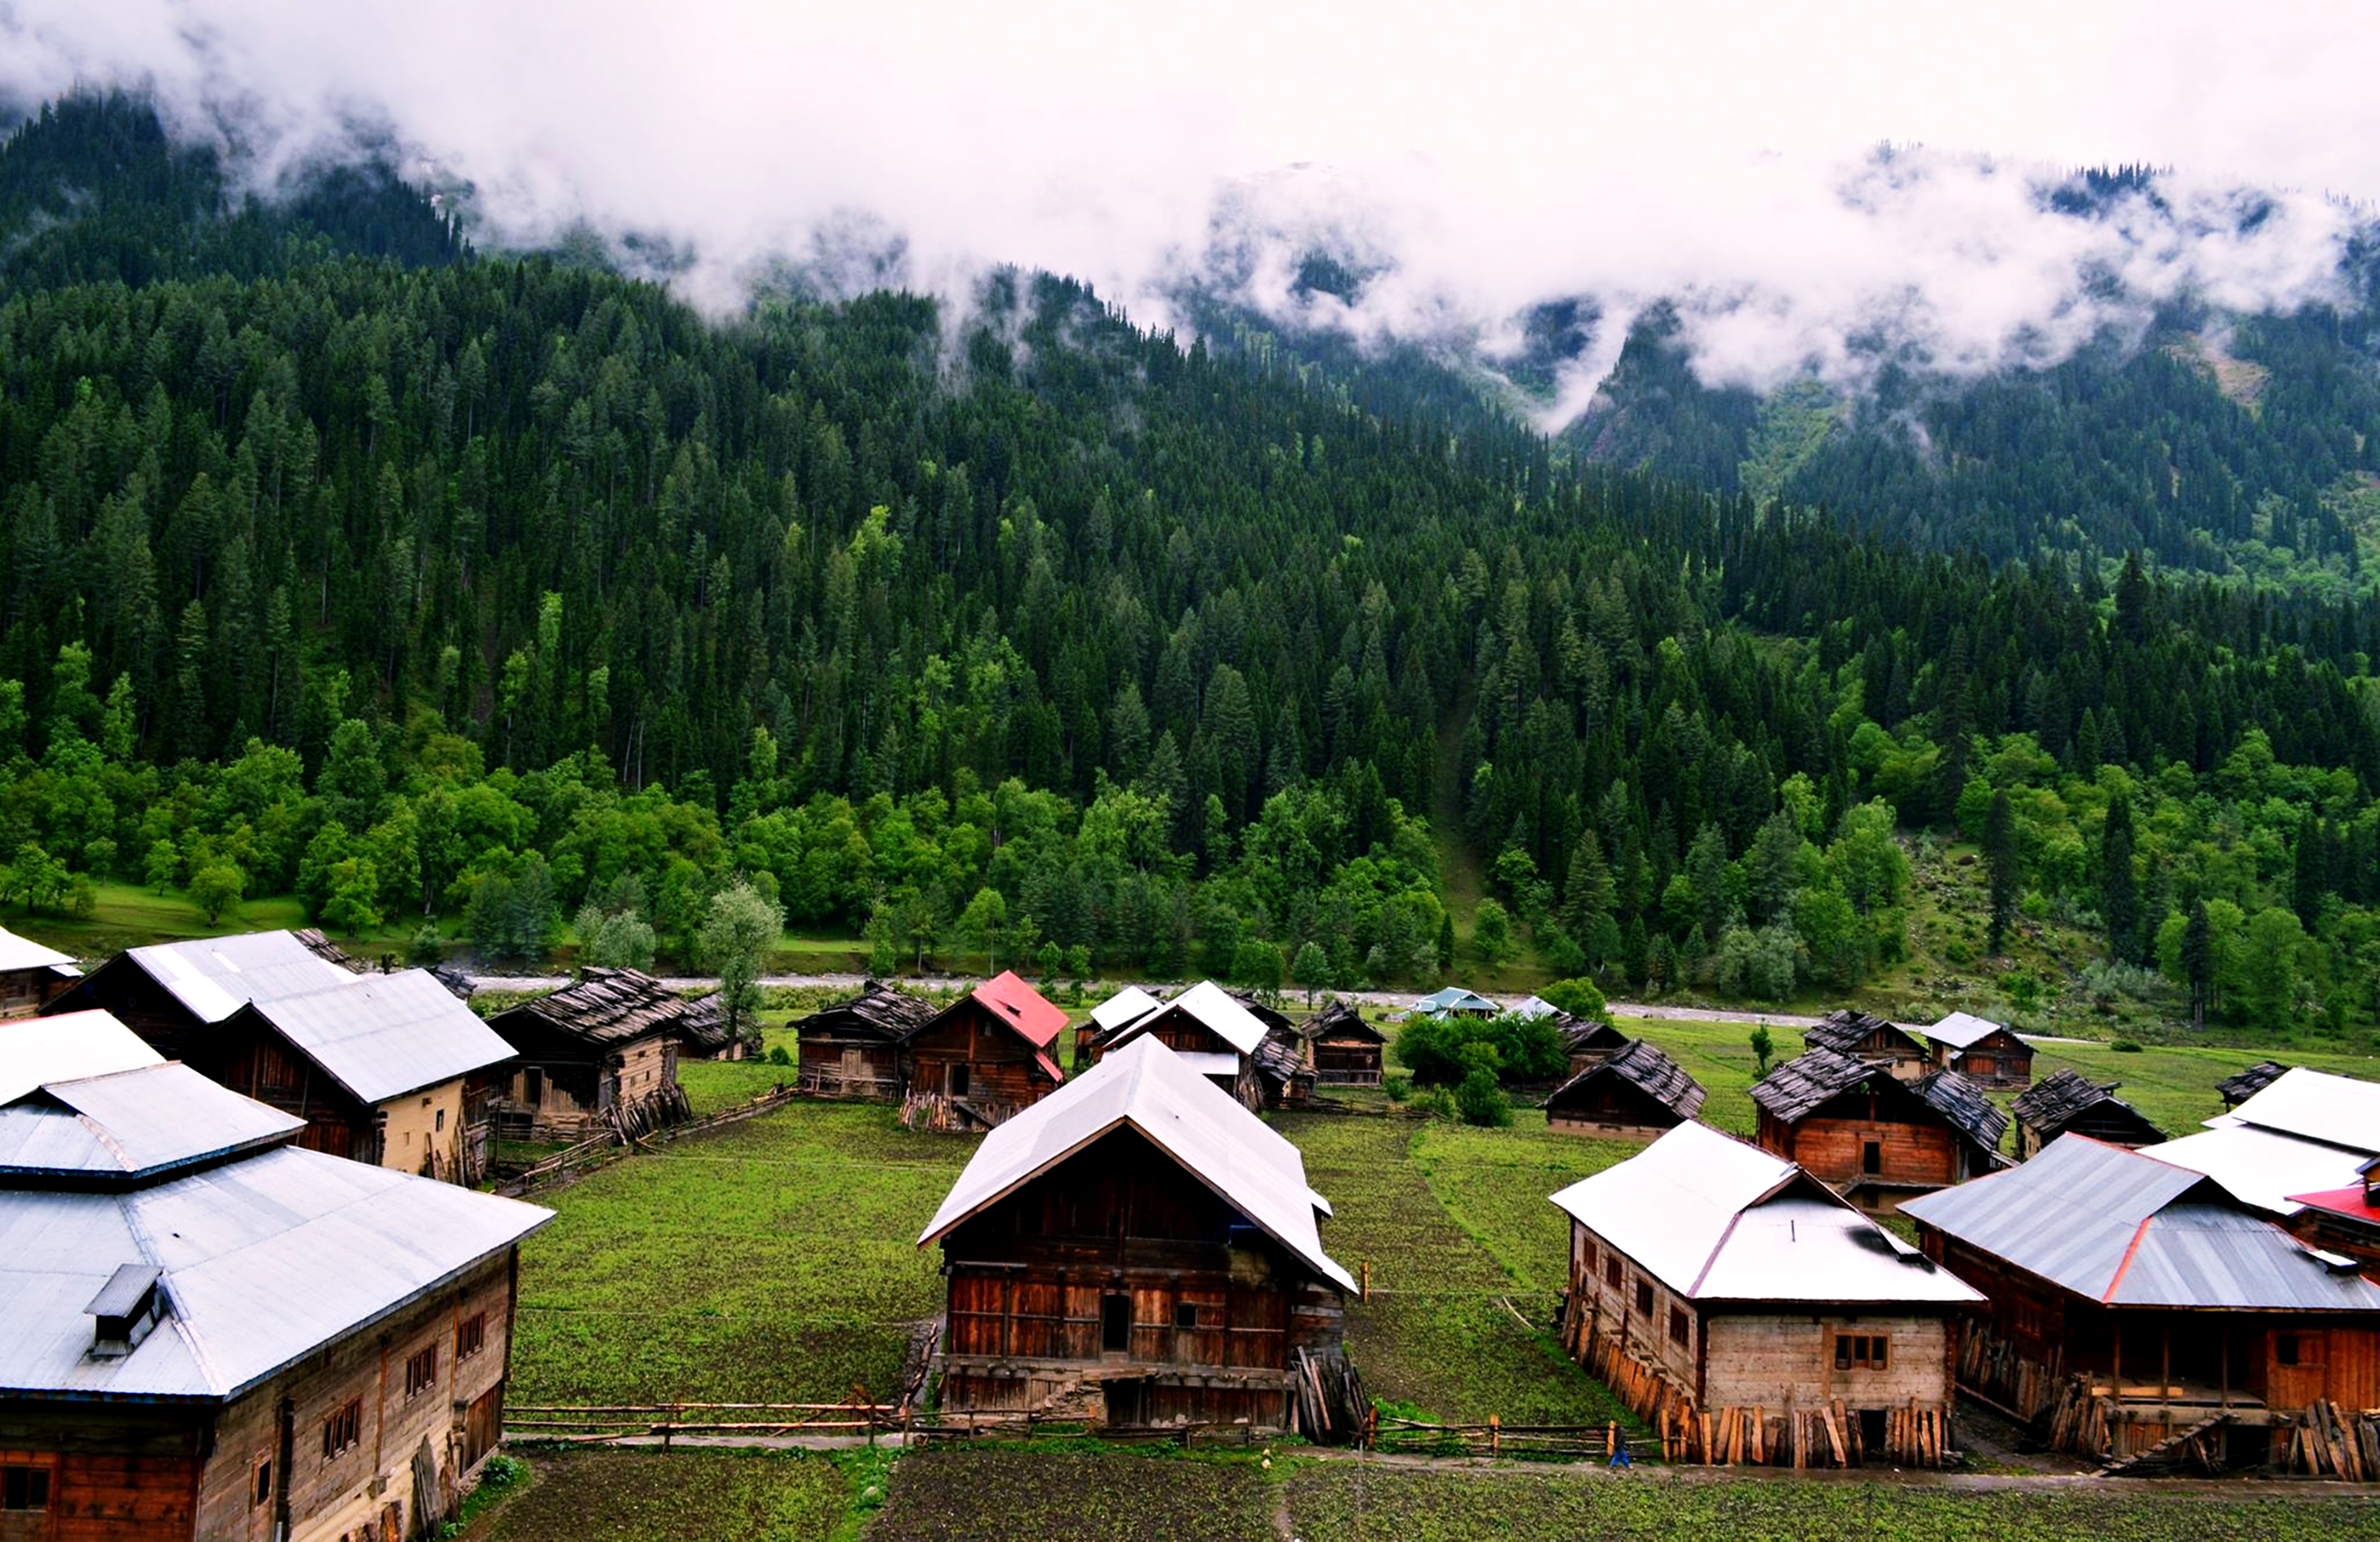 kashmir, village, photography, landscape, forest, house, hut, mountain, pakistan